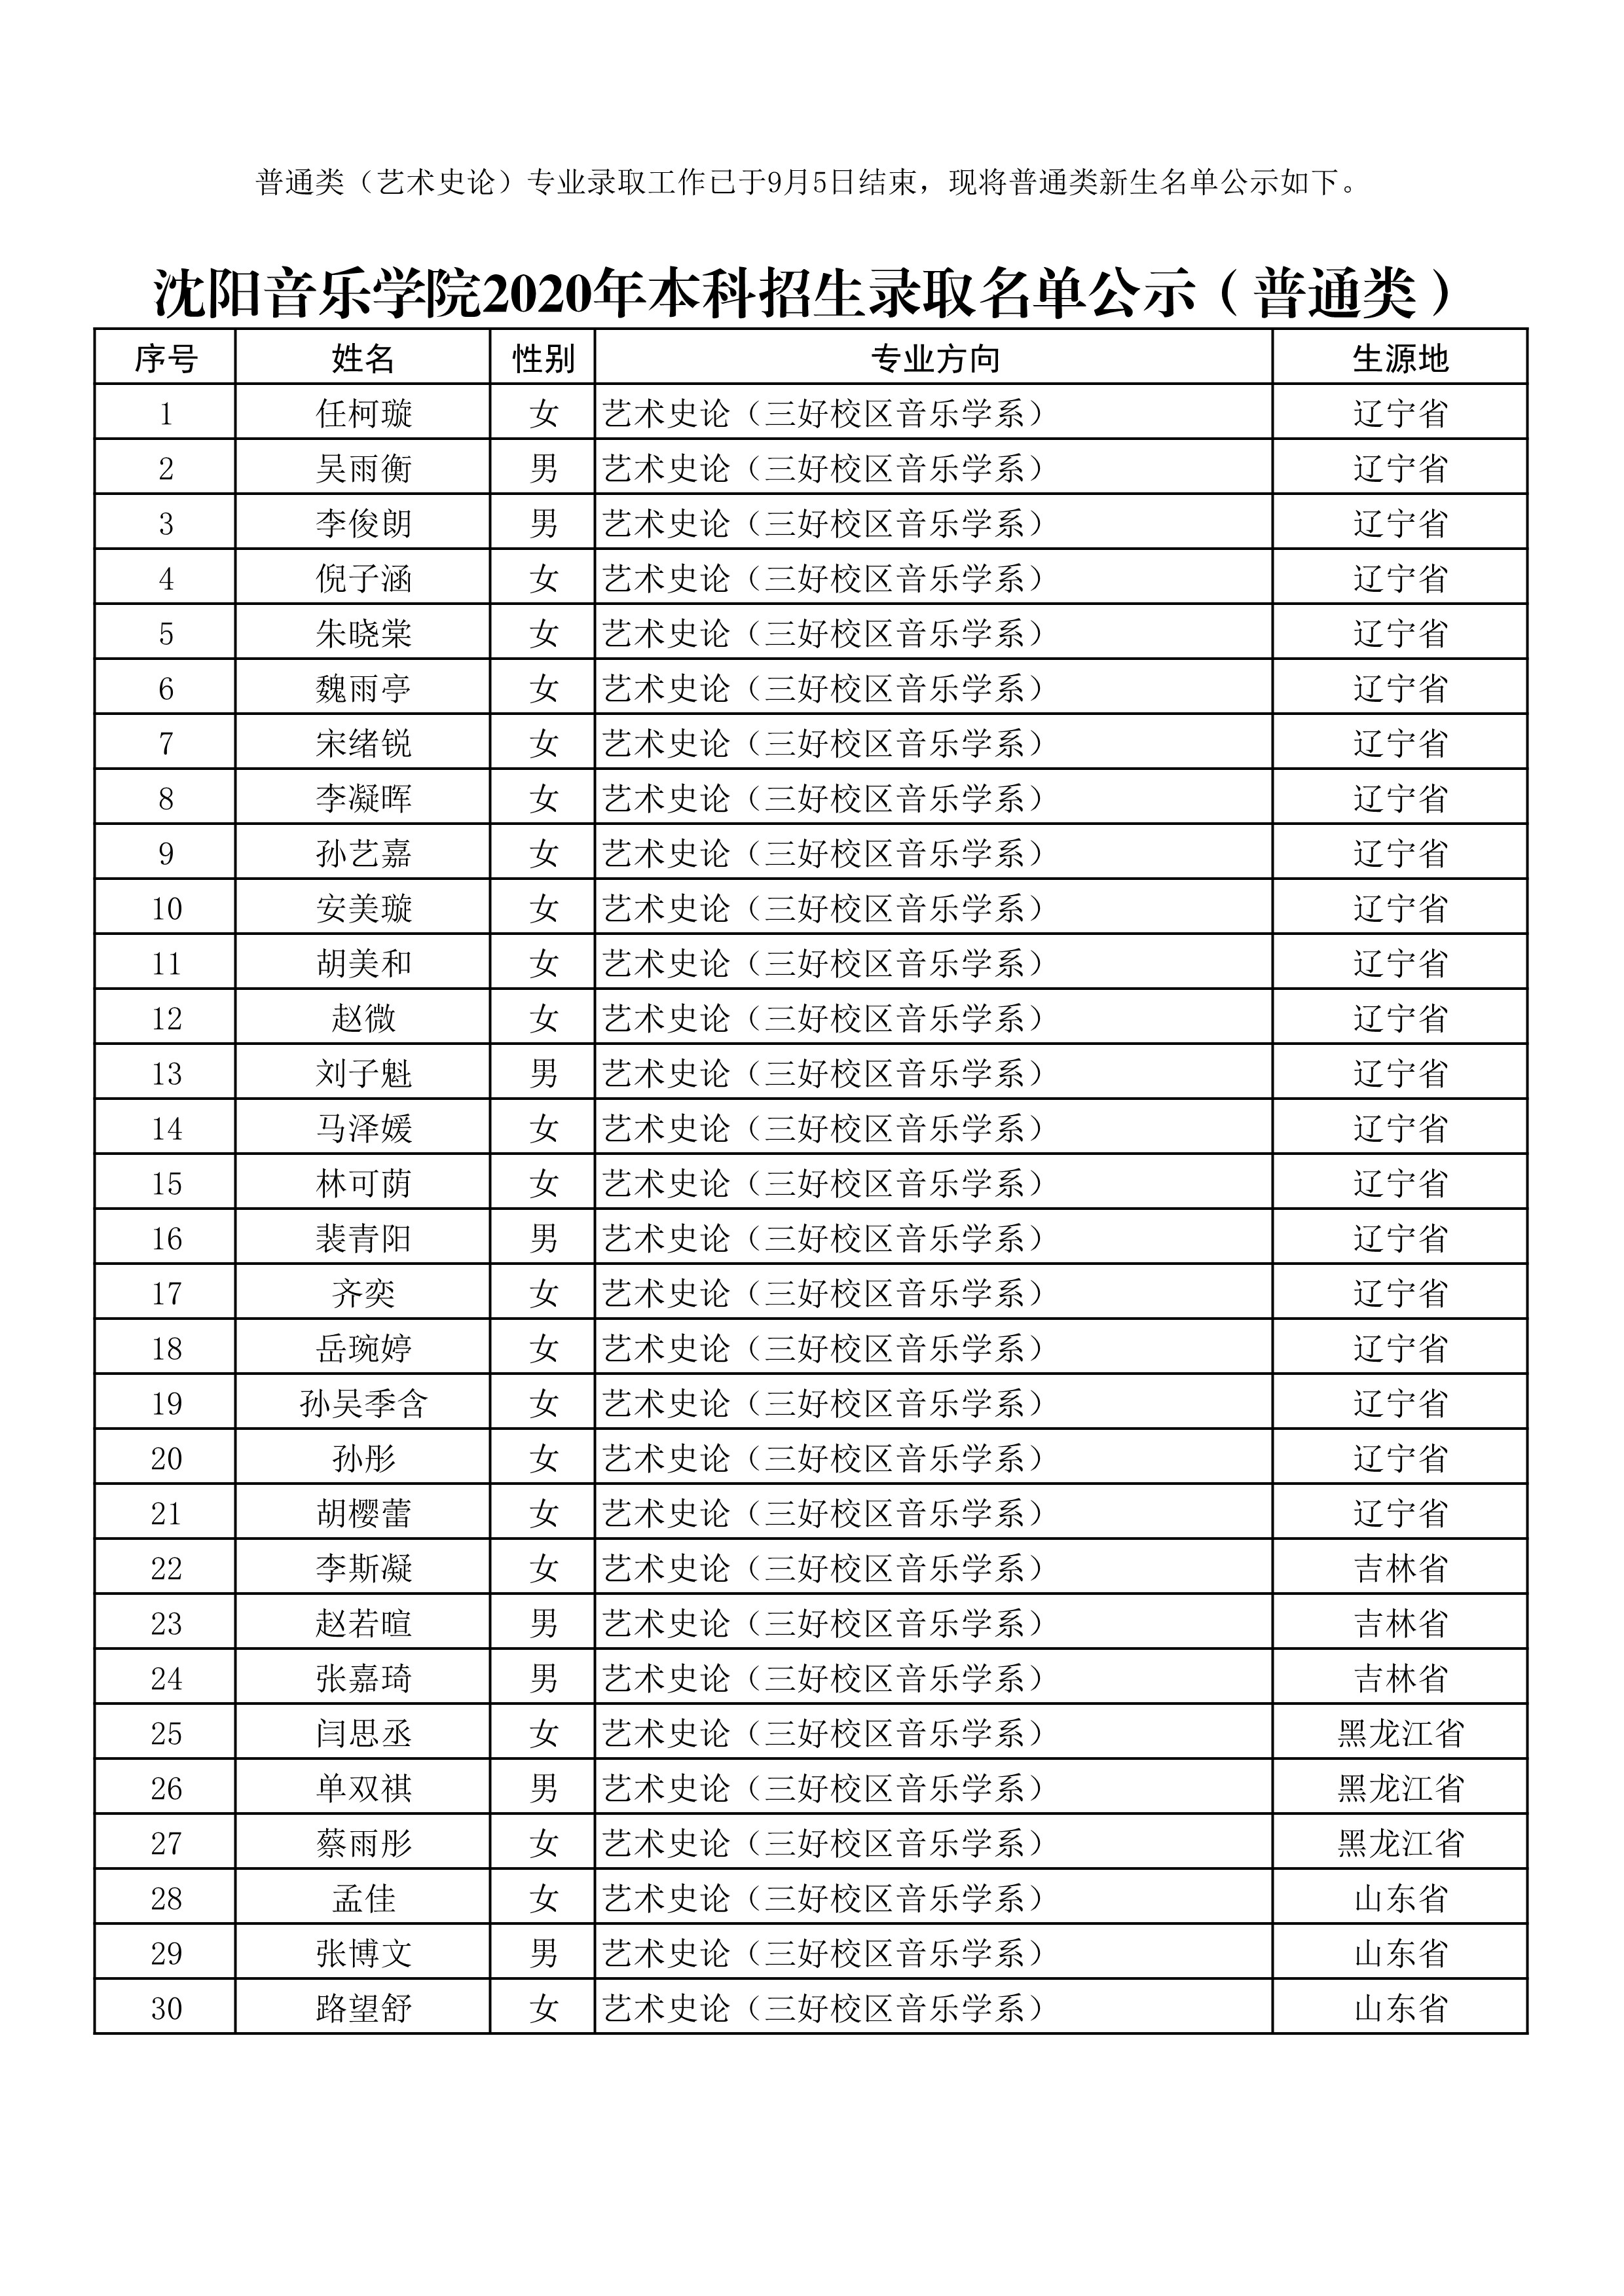 沈阳音乐学院2020本科招生录取名单公示（艺术史论）_1.jpg